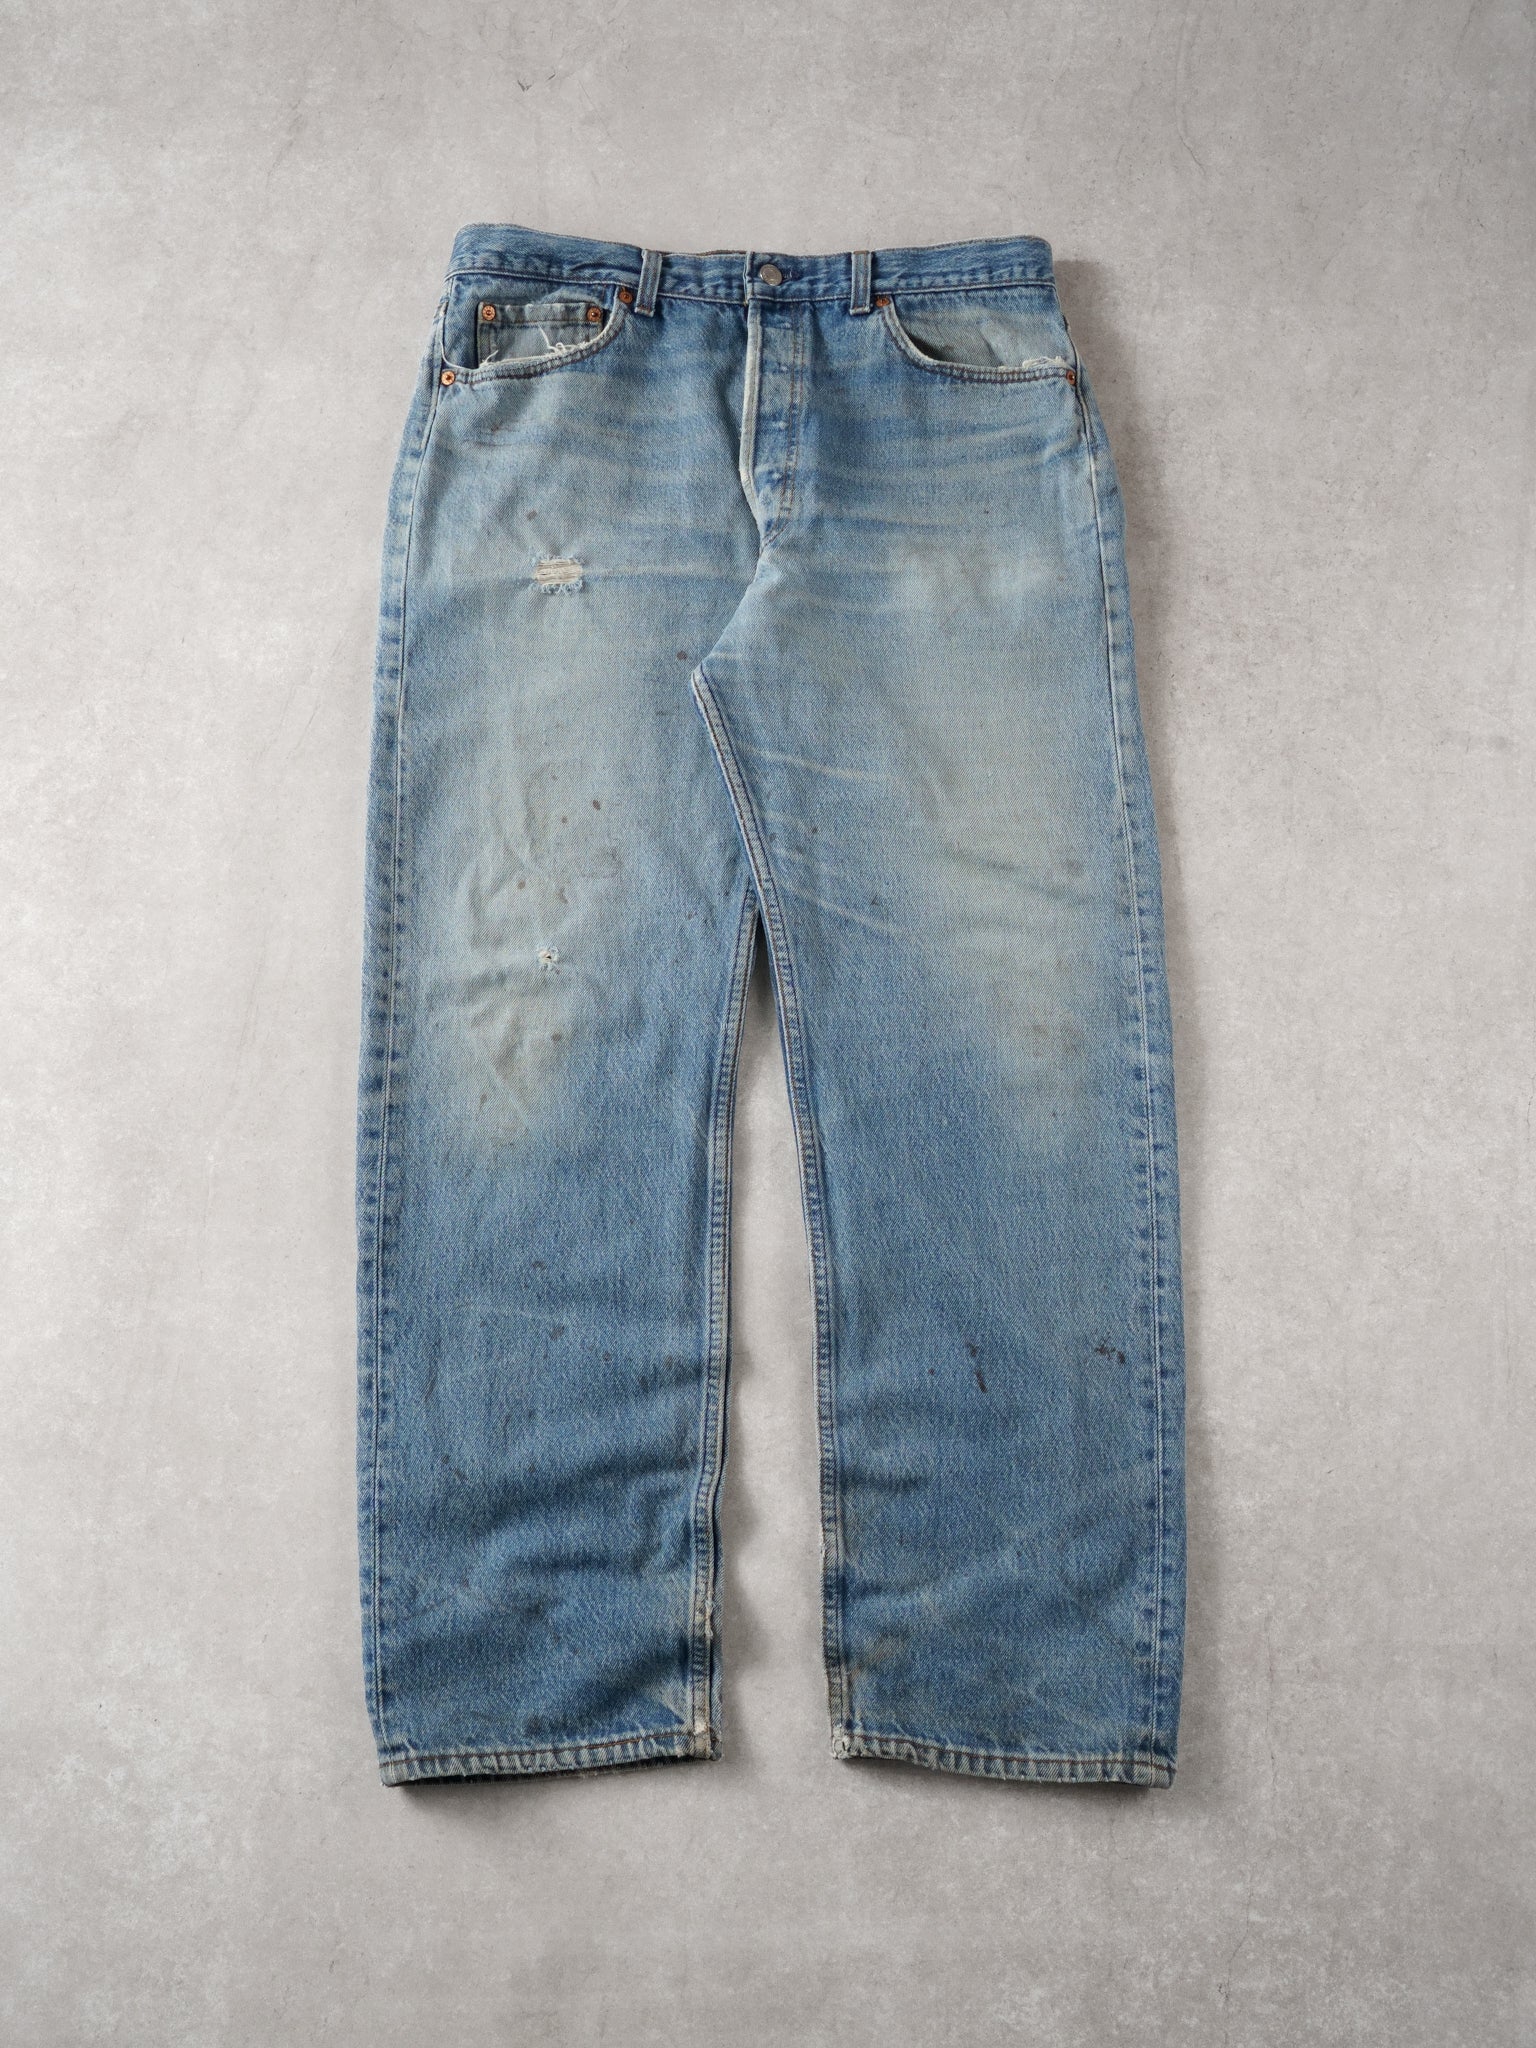 Vintage 90s Light Blue Levi's Denim Jeans (34x30)